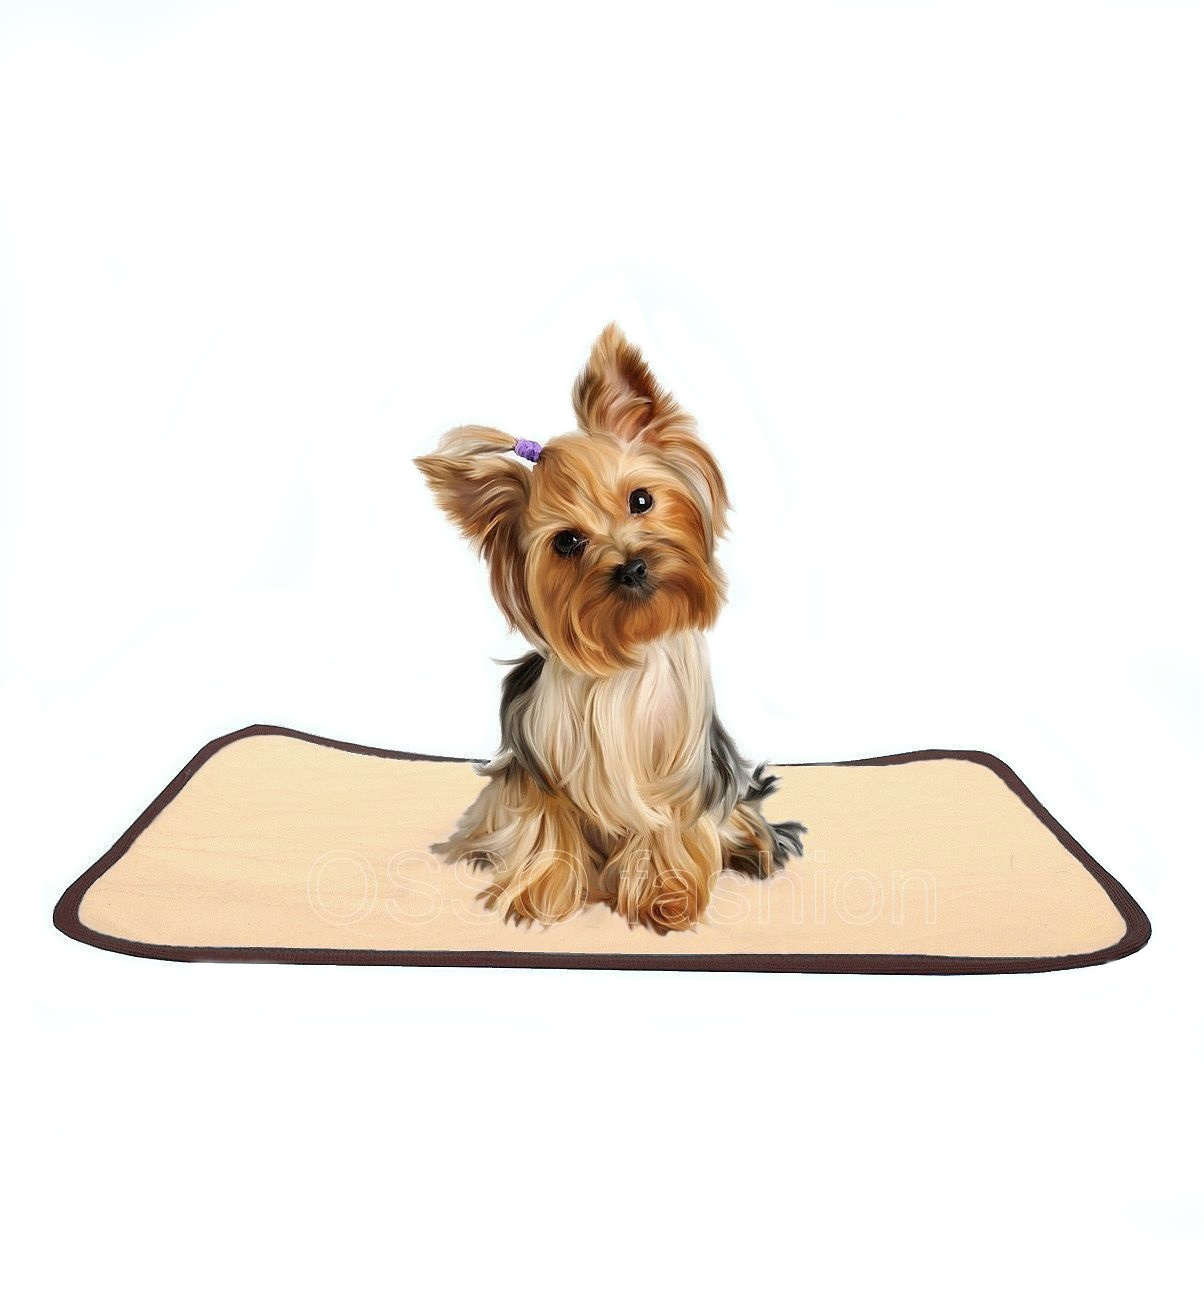 OSSO OSSO пеленка для собак многоразовая впитывающая (коричневая) (30*40 см) пеленка osso fashion для собак многоразовая впитывающая коричневая 50х60 см